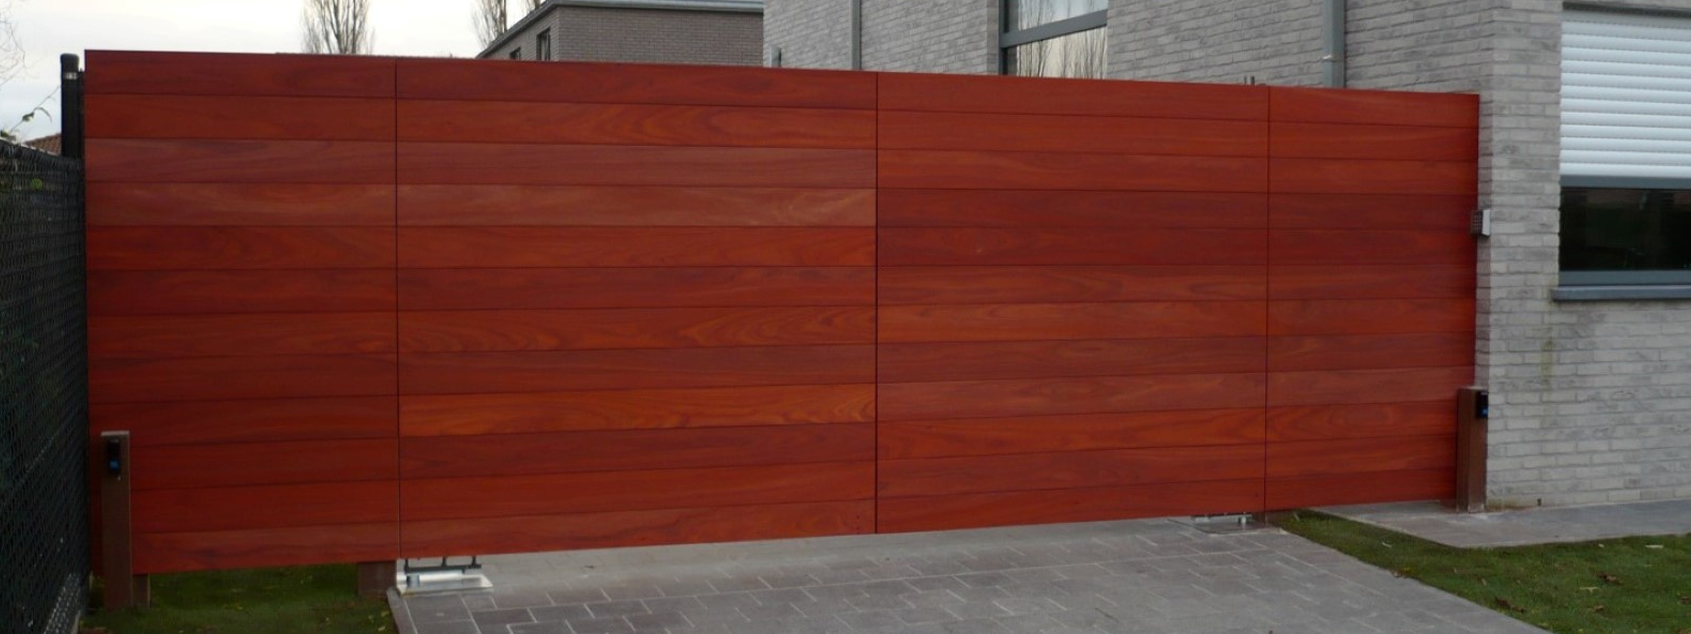 Moderne rood houten poort met automatisatie voor klant uit regio Sleidinge